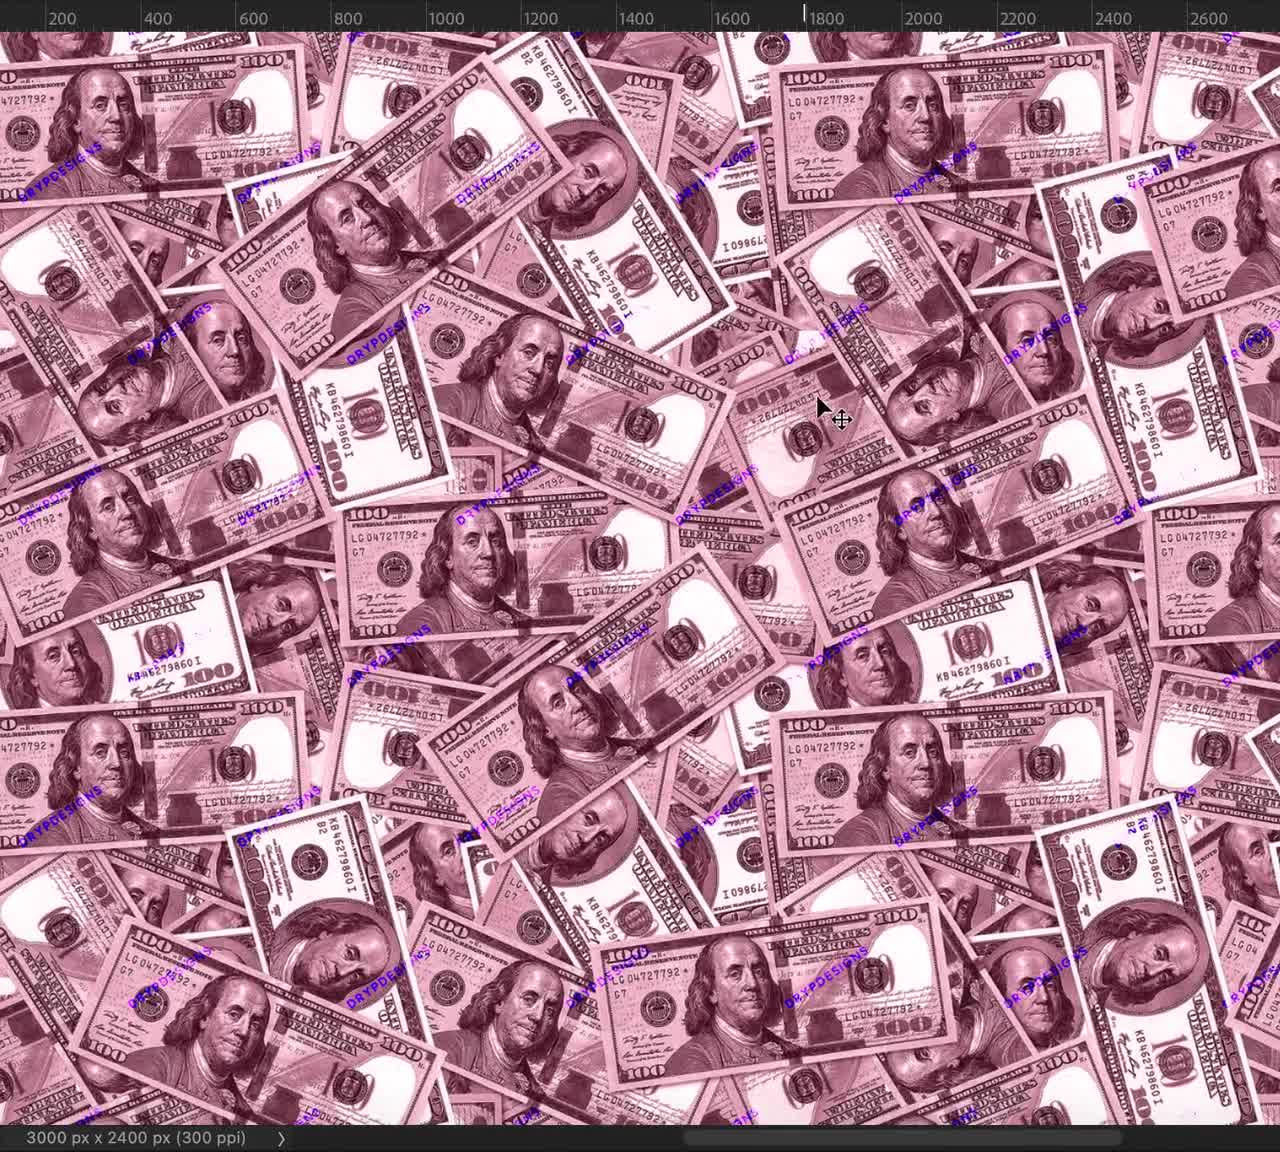 Tiền 100 đô la màu hồng - Hình ảnh một tấm tiền 100 đô la Mỹ màu hồng, rực rỡ với những cọng rối bạc. Nó sẽ khiến bạn muốn giữ nó trong tay và không muốn rời đi.